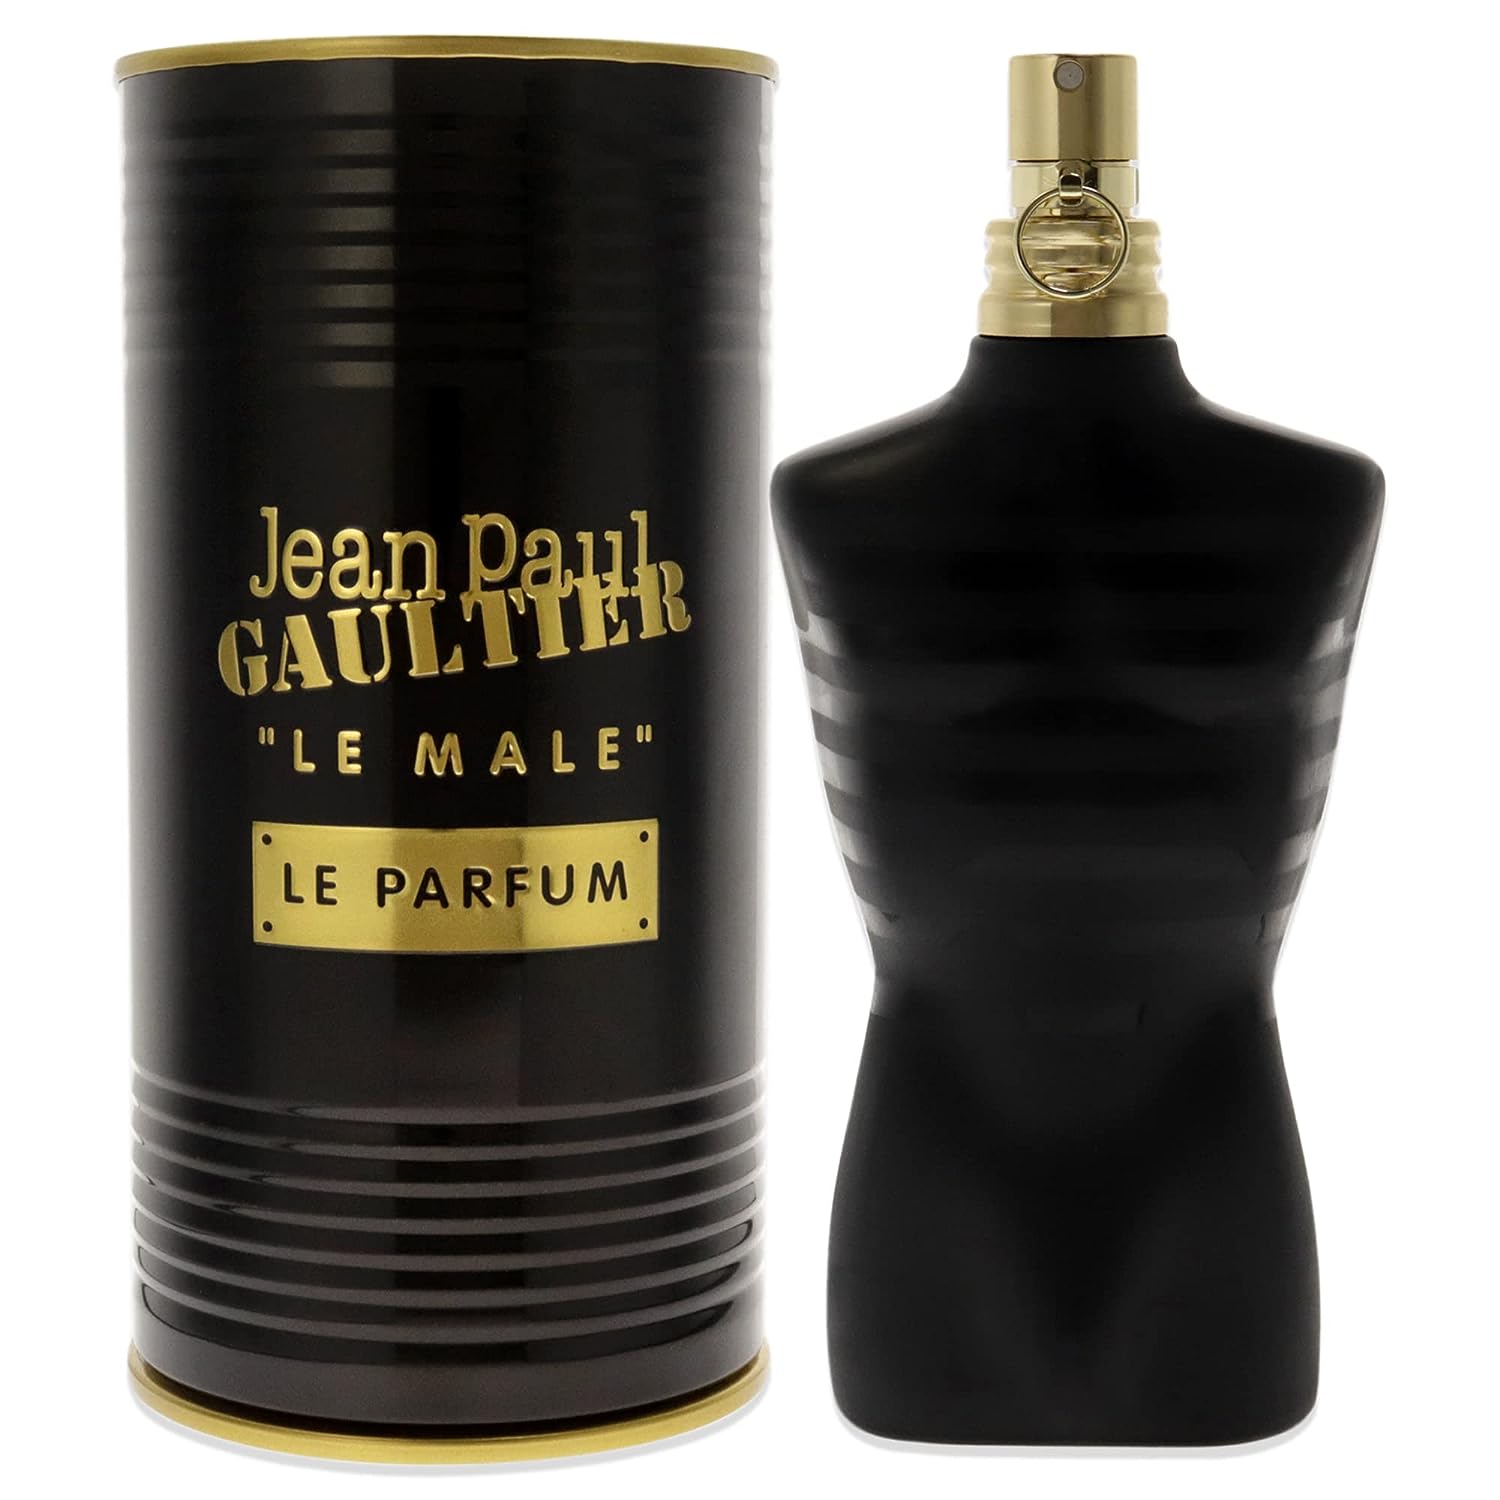 Le Male Le Parfum by Jean Paul Gaultier 4.2 oz EDP Spray for Men